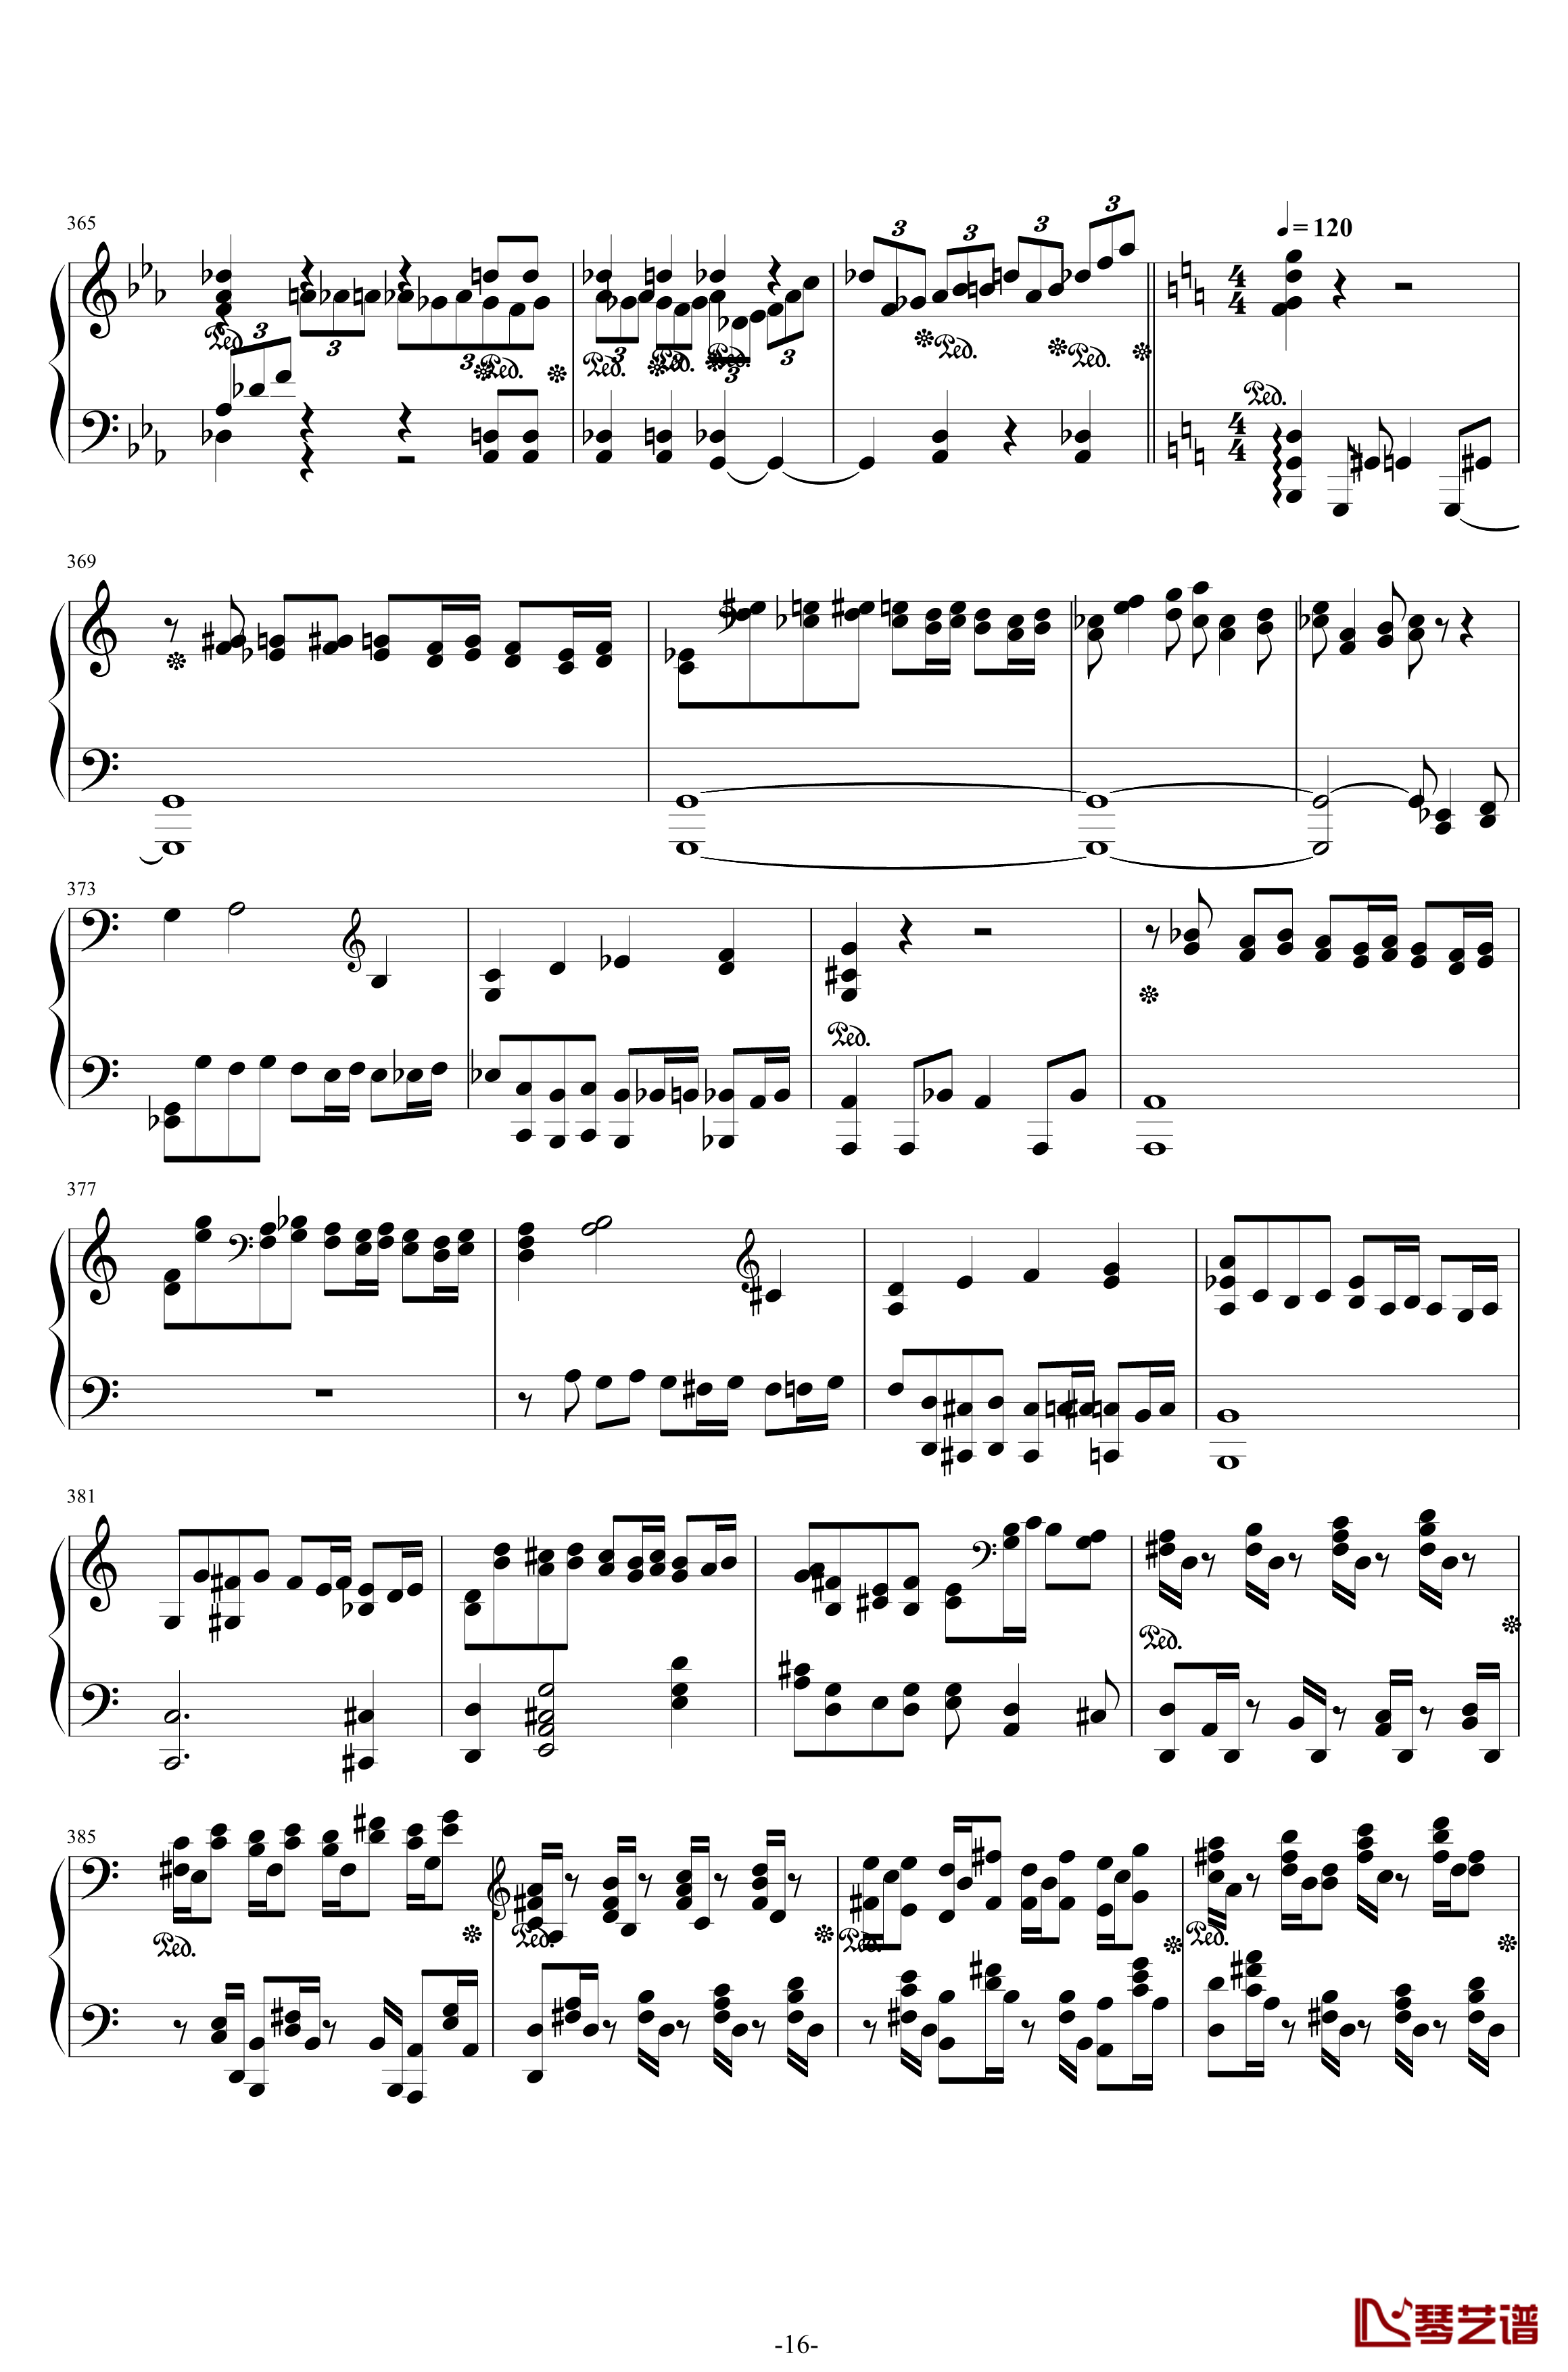 第二钢琴协奏曲钢琴谱-第三乐章独奏版-c小调-拉赫马尼若夫16